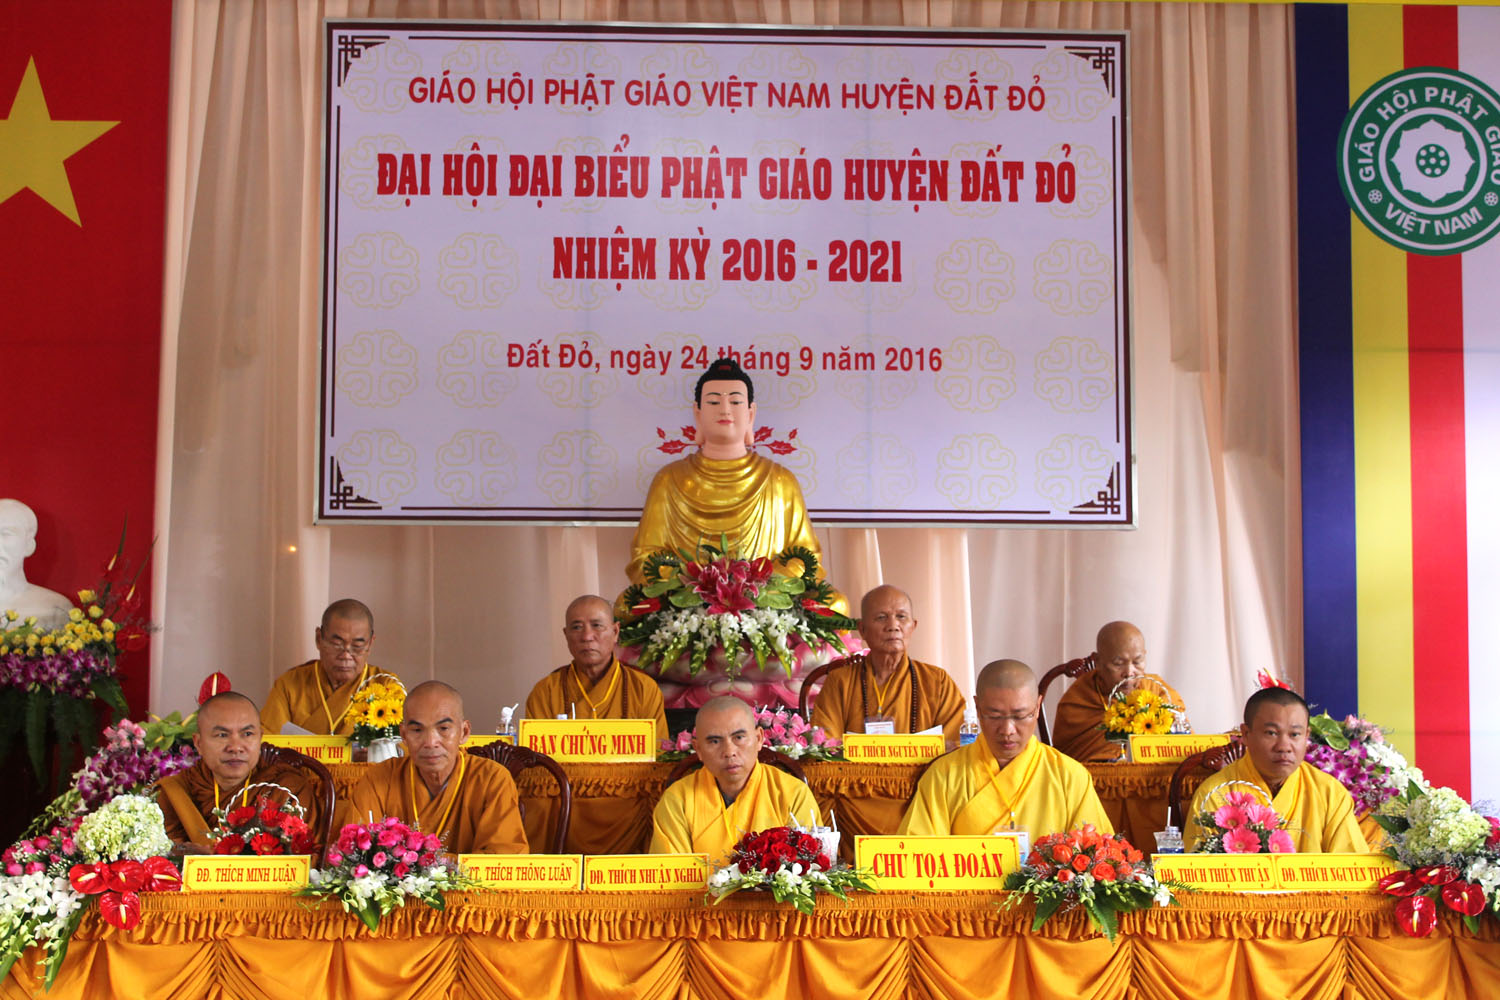 Phật giáo huyện Đất Đỏ tổ chức Đại hội đại biểu nhiệm kỳ 2016 - 2021	